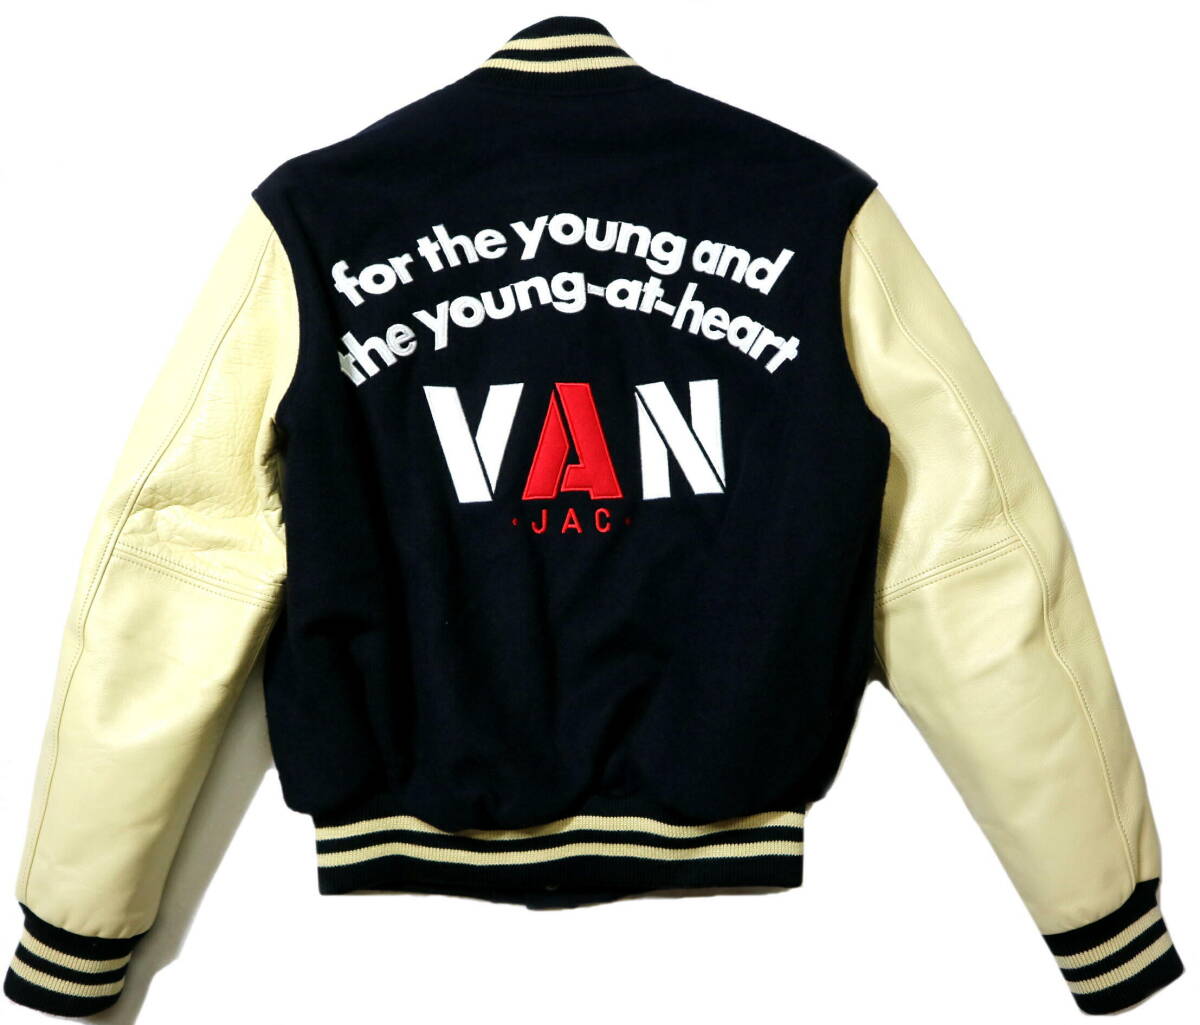  прекрасный товар!* сделано в Японии VAN JAC Van ja Kett рукав кожа куртка *L размер ( рост 176-178 см ранг )